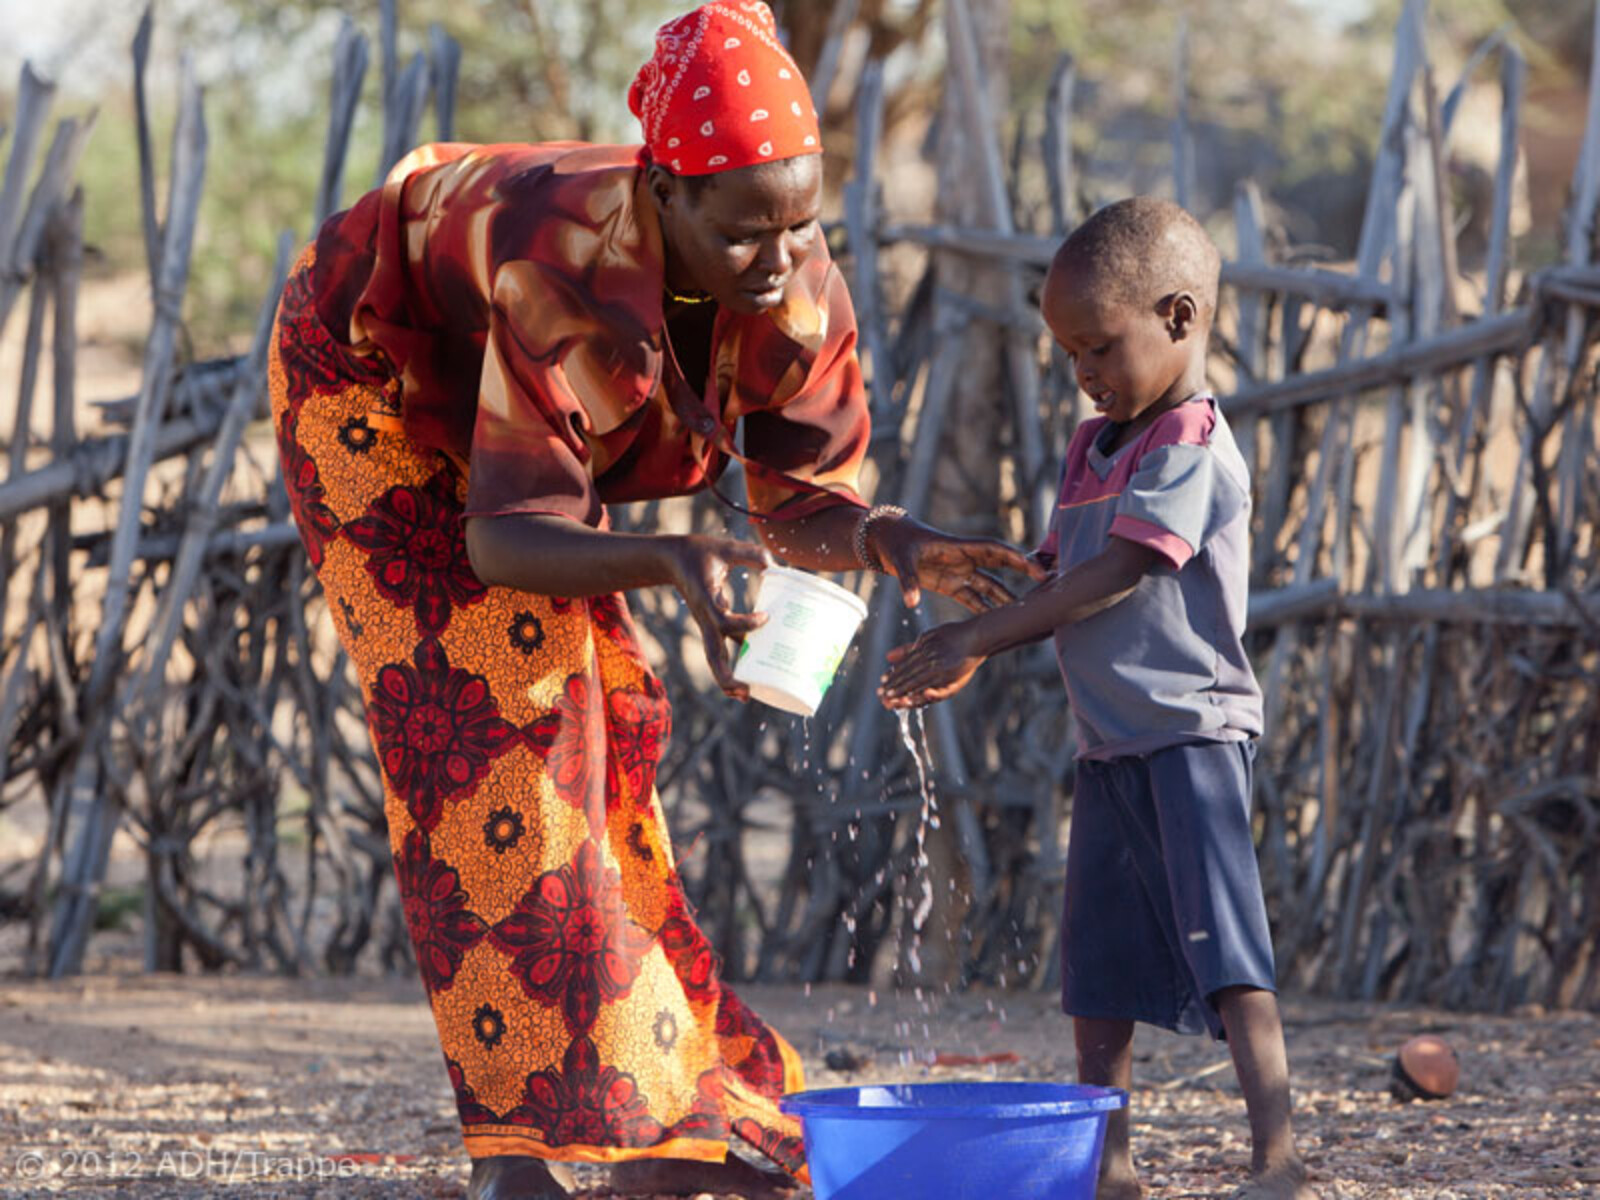 Vor dem Essen werden die Hände gewaschen – auch in Afrika.